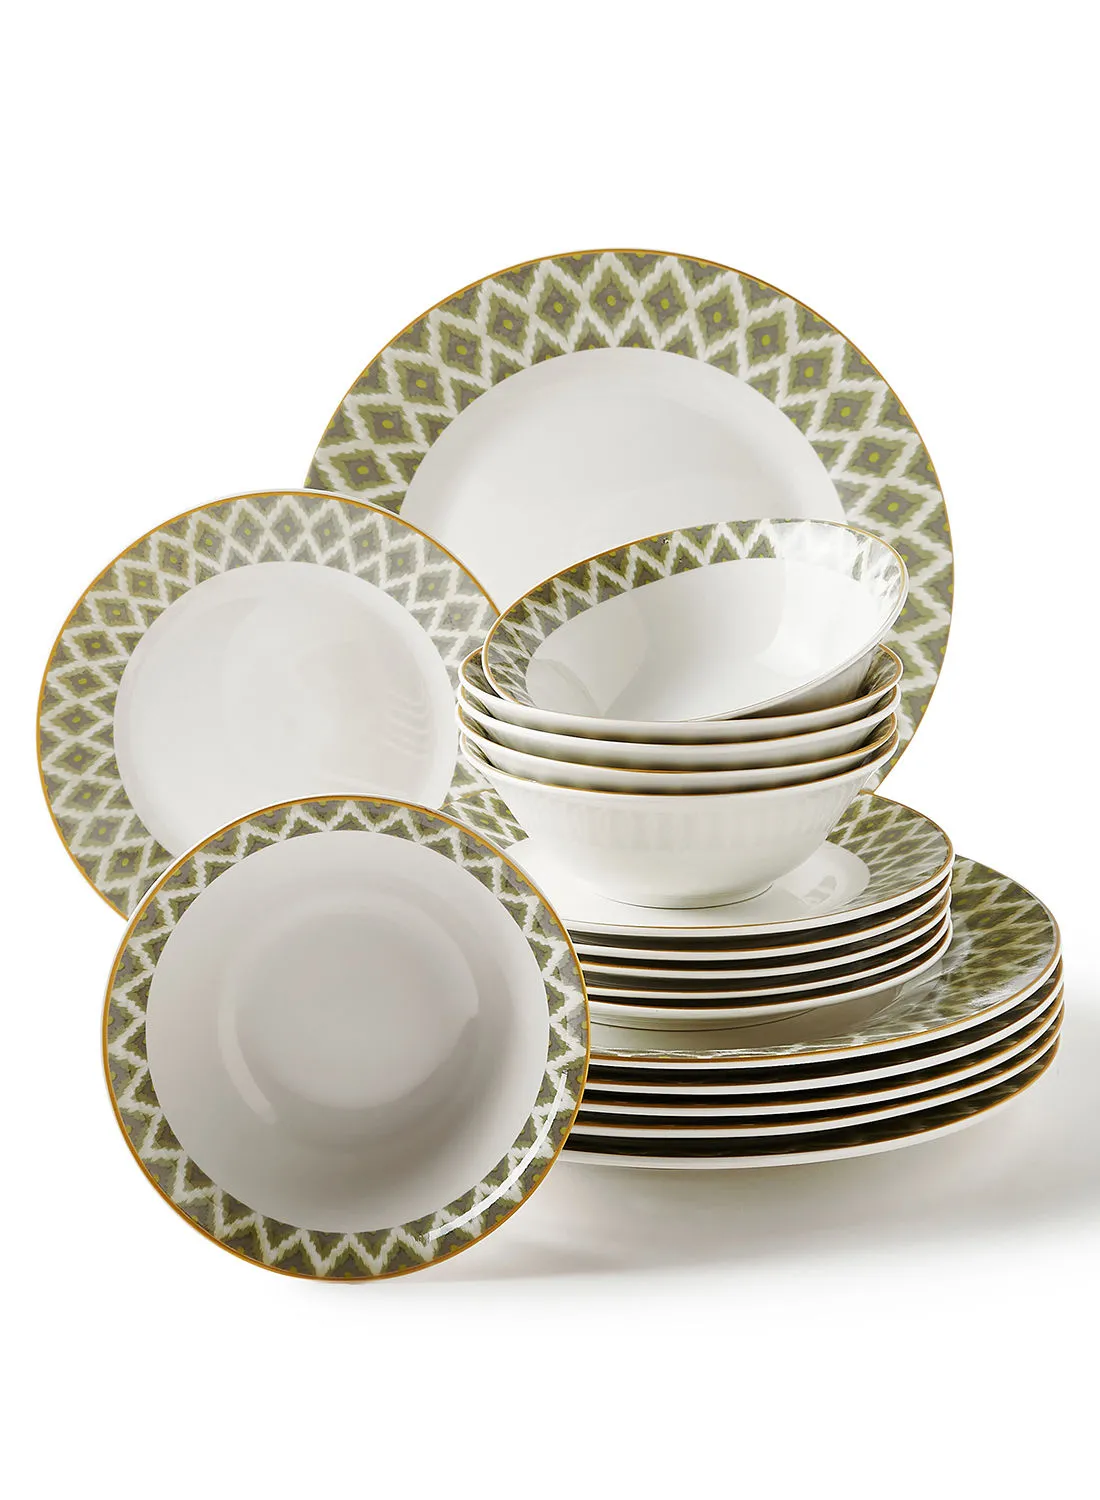 noon east 18 Piece Porcelain Dinner Set - Dishes, Plates - Dinner Plate, Side Plate, Bowl - Serves 6 - Printed Design Ikat